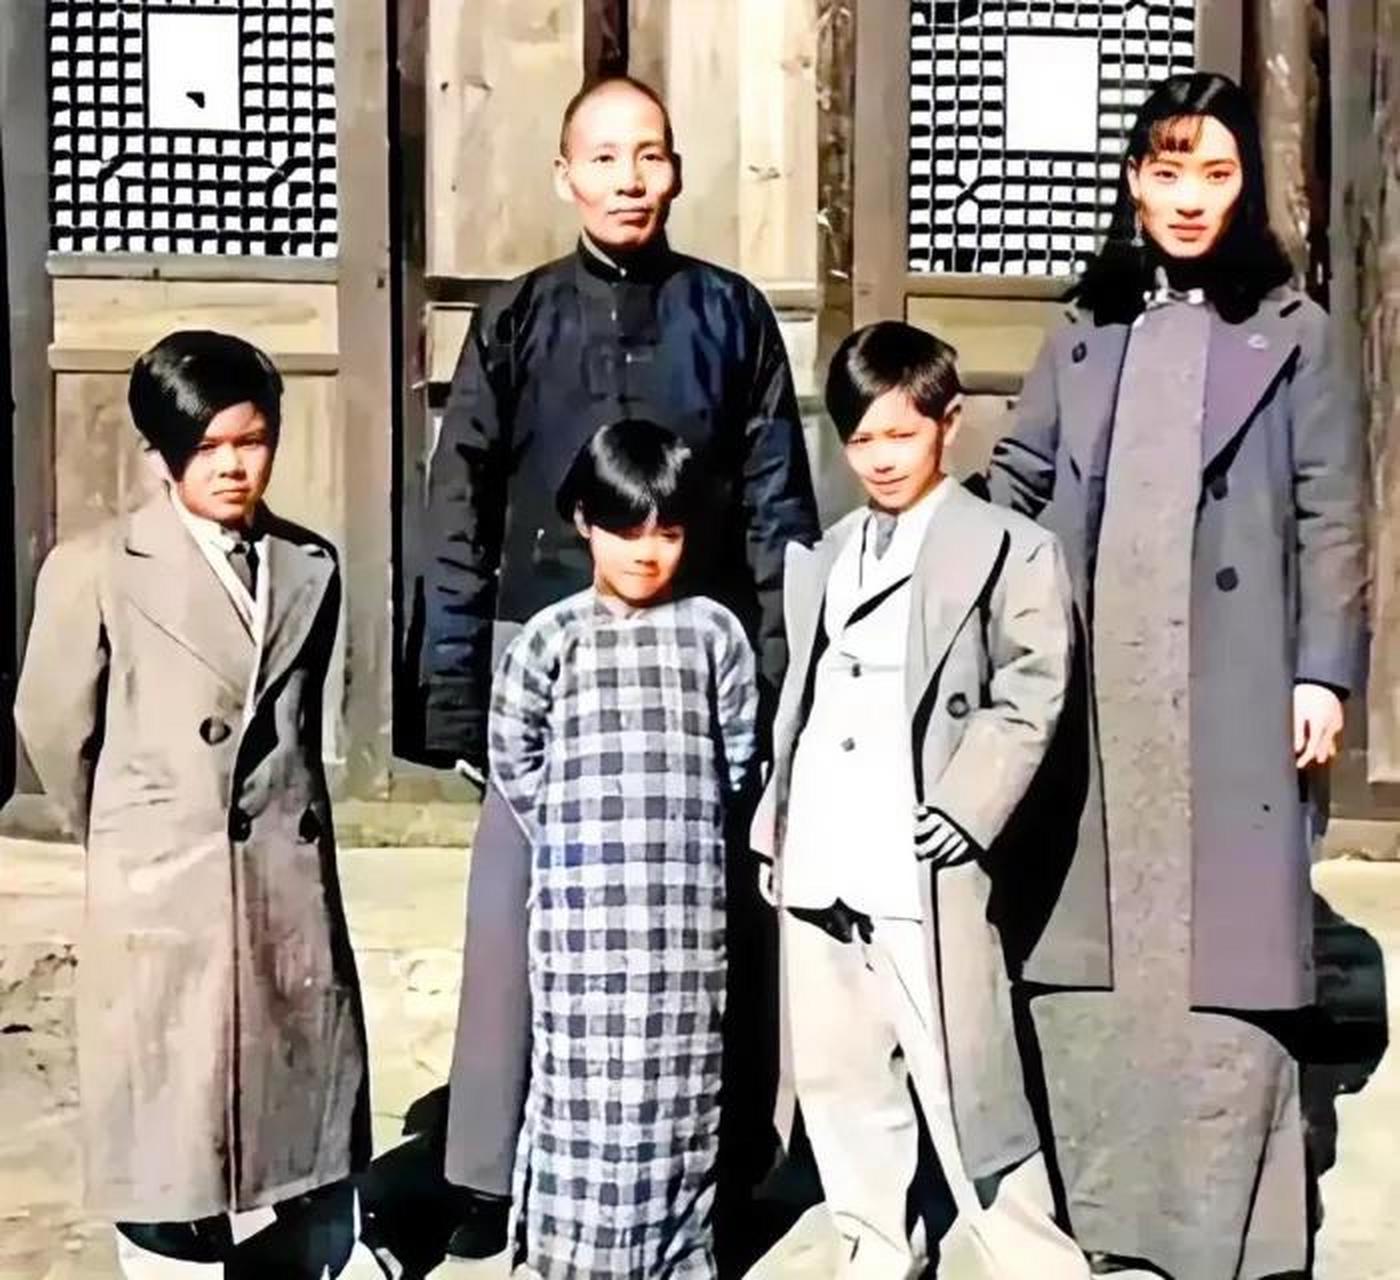 上个世纪三十年代,刘文辉和他的妻子杨蕴光带着他们的三个孩子留下了